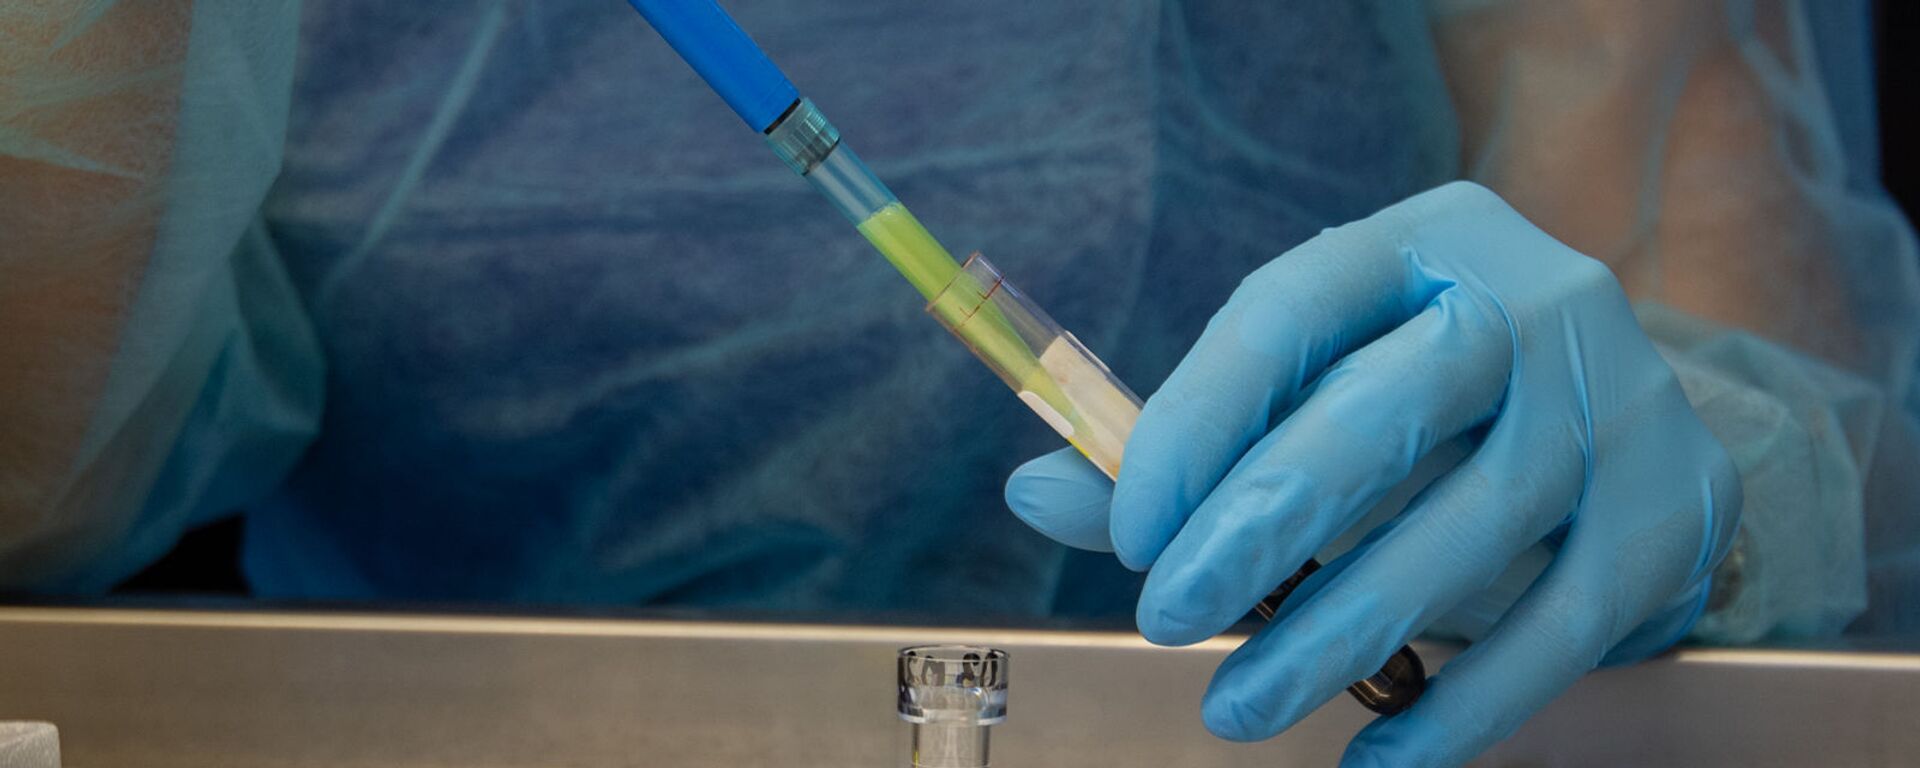 Лаборатория для проведения тестов на антитела к коронавирусу в Республиканском центре профилактики СПИДа - Sputnik Արմենիա, 1920, 01.04.2021